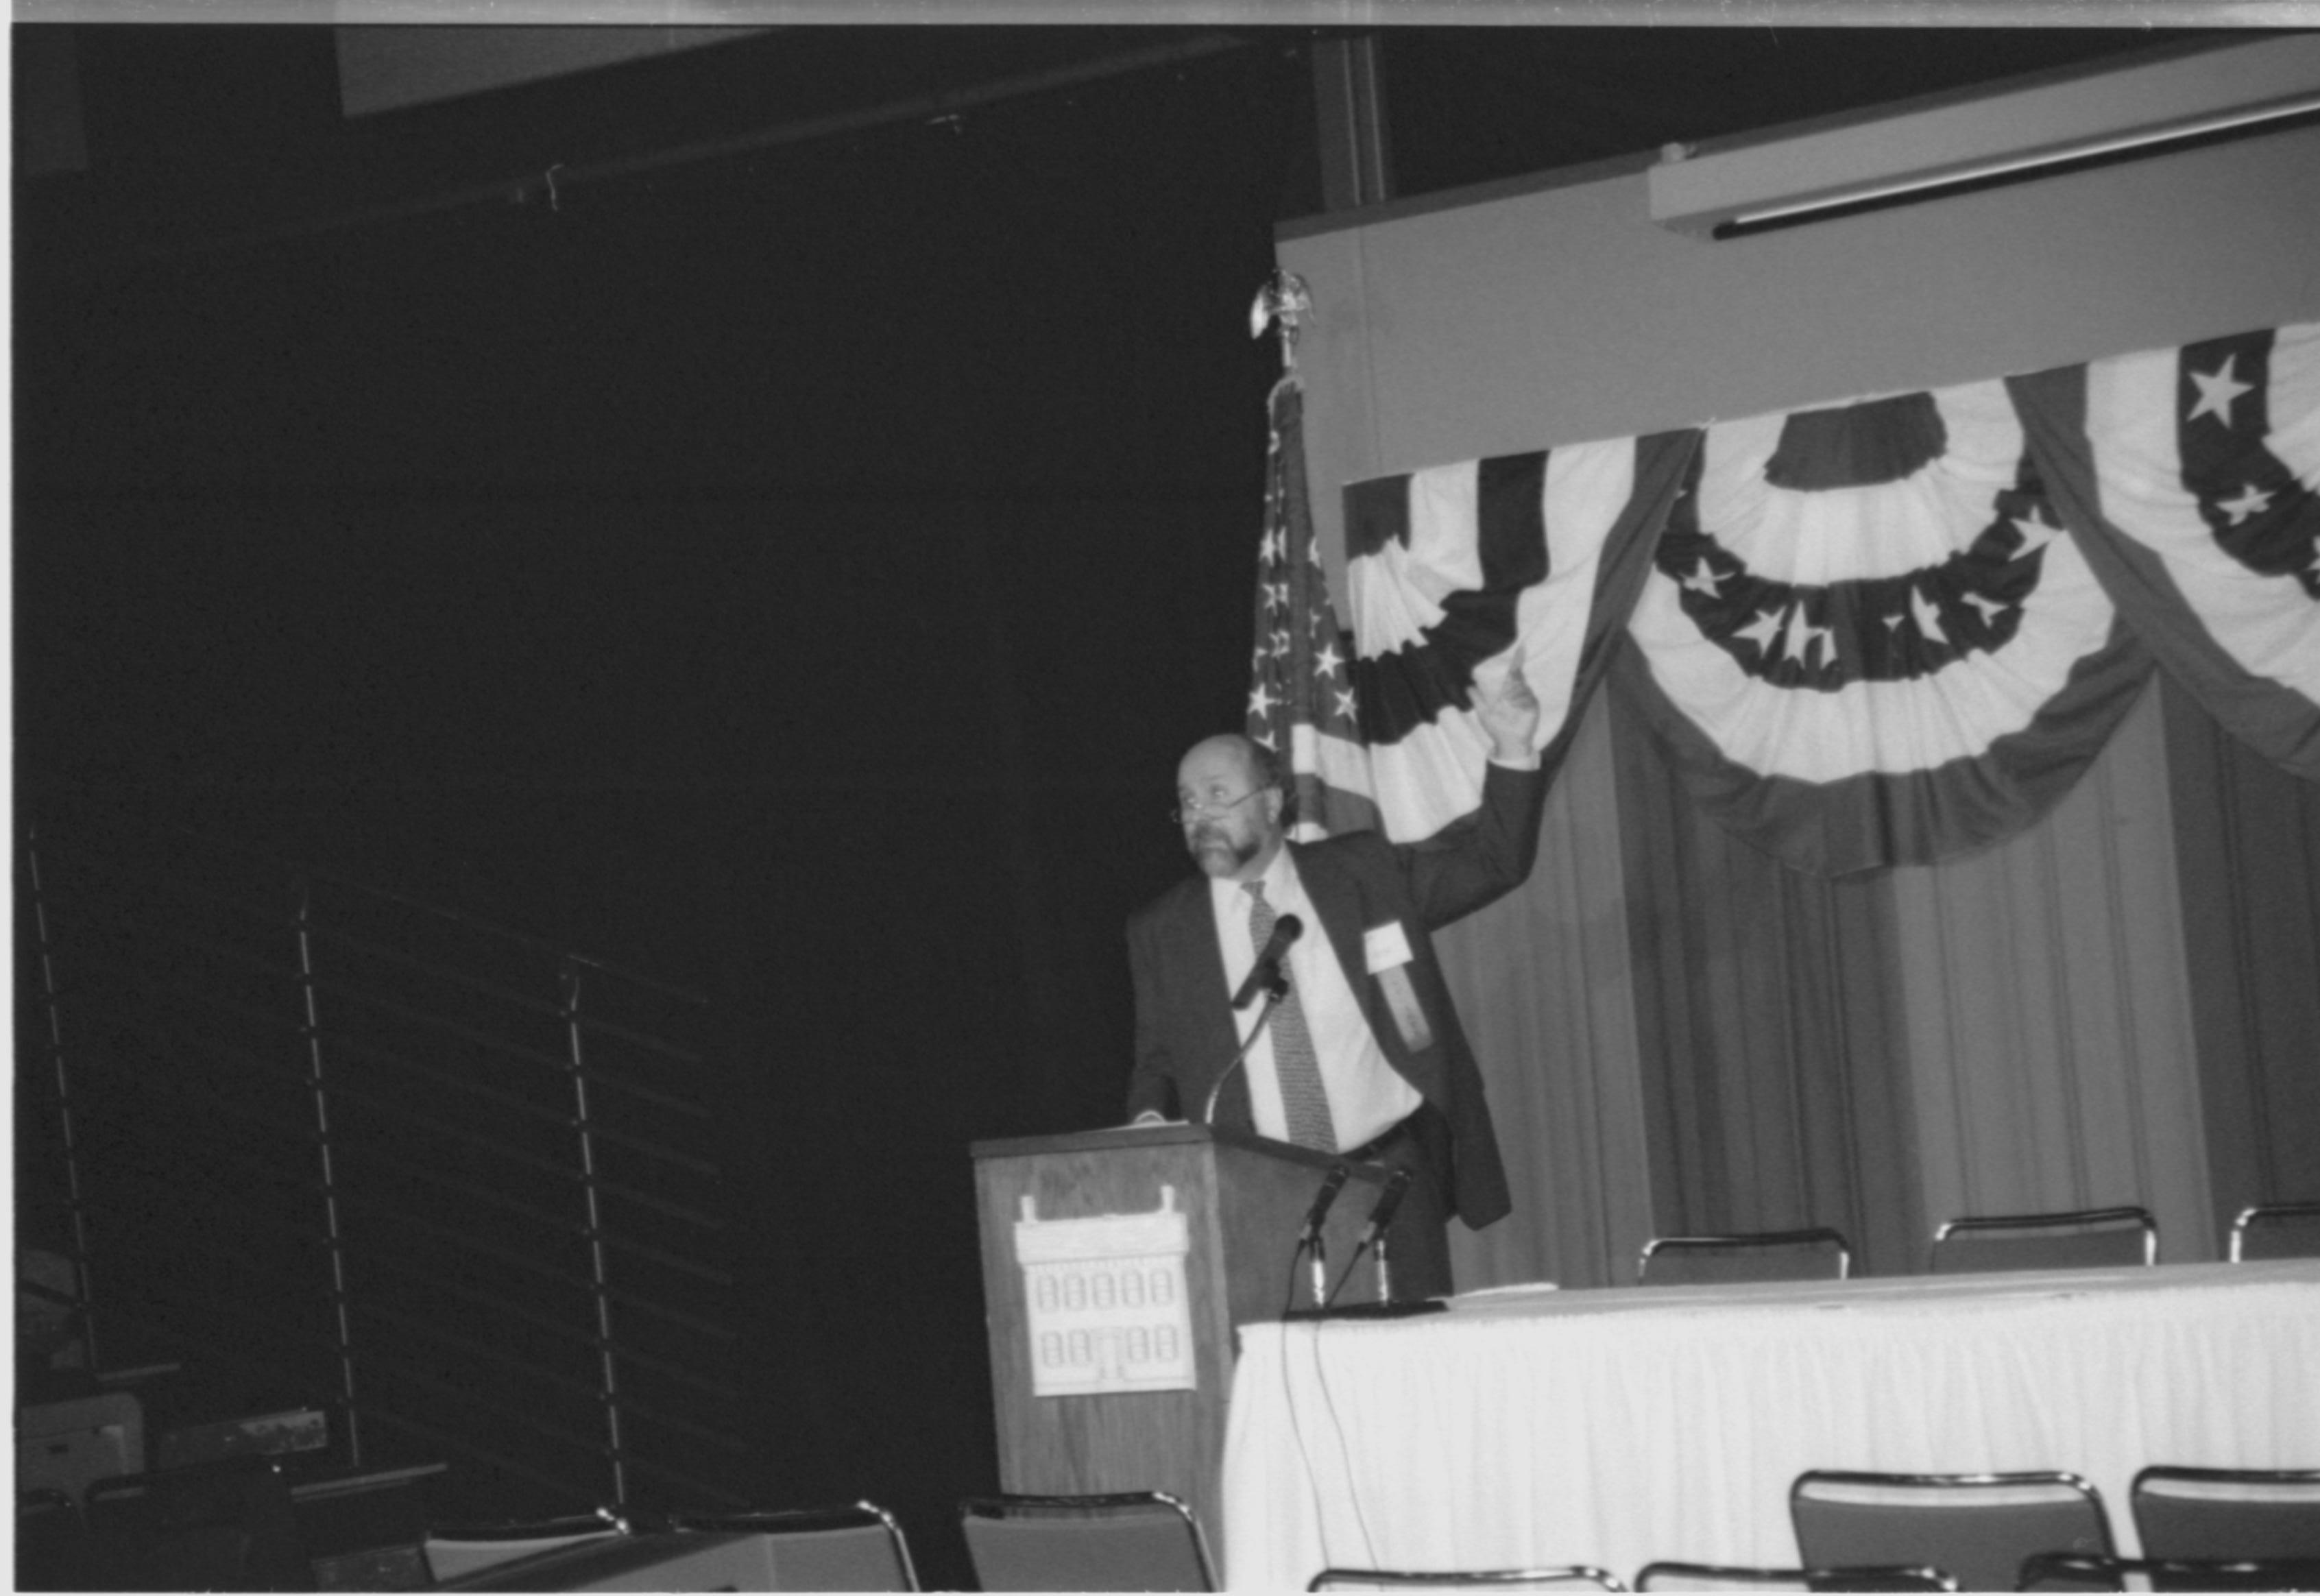 Man speaking at podium. 1999-16; 7 Colloquium, 1999